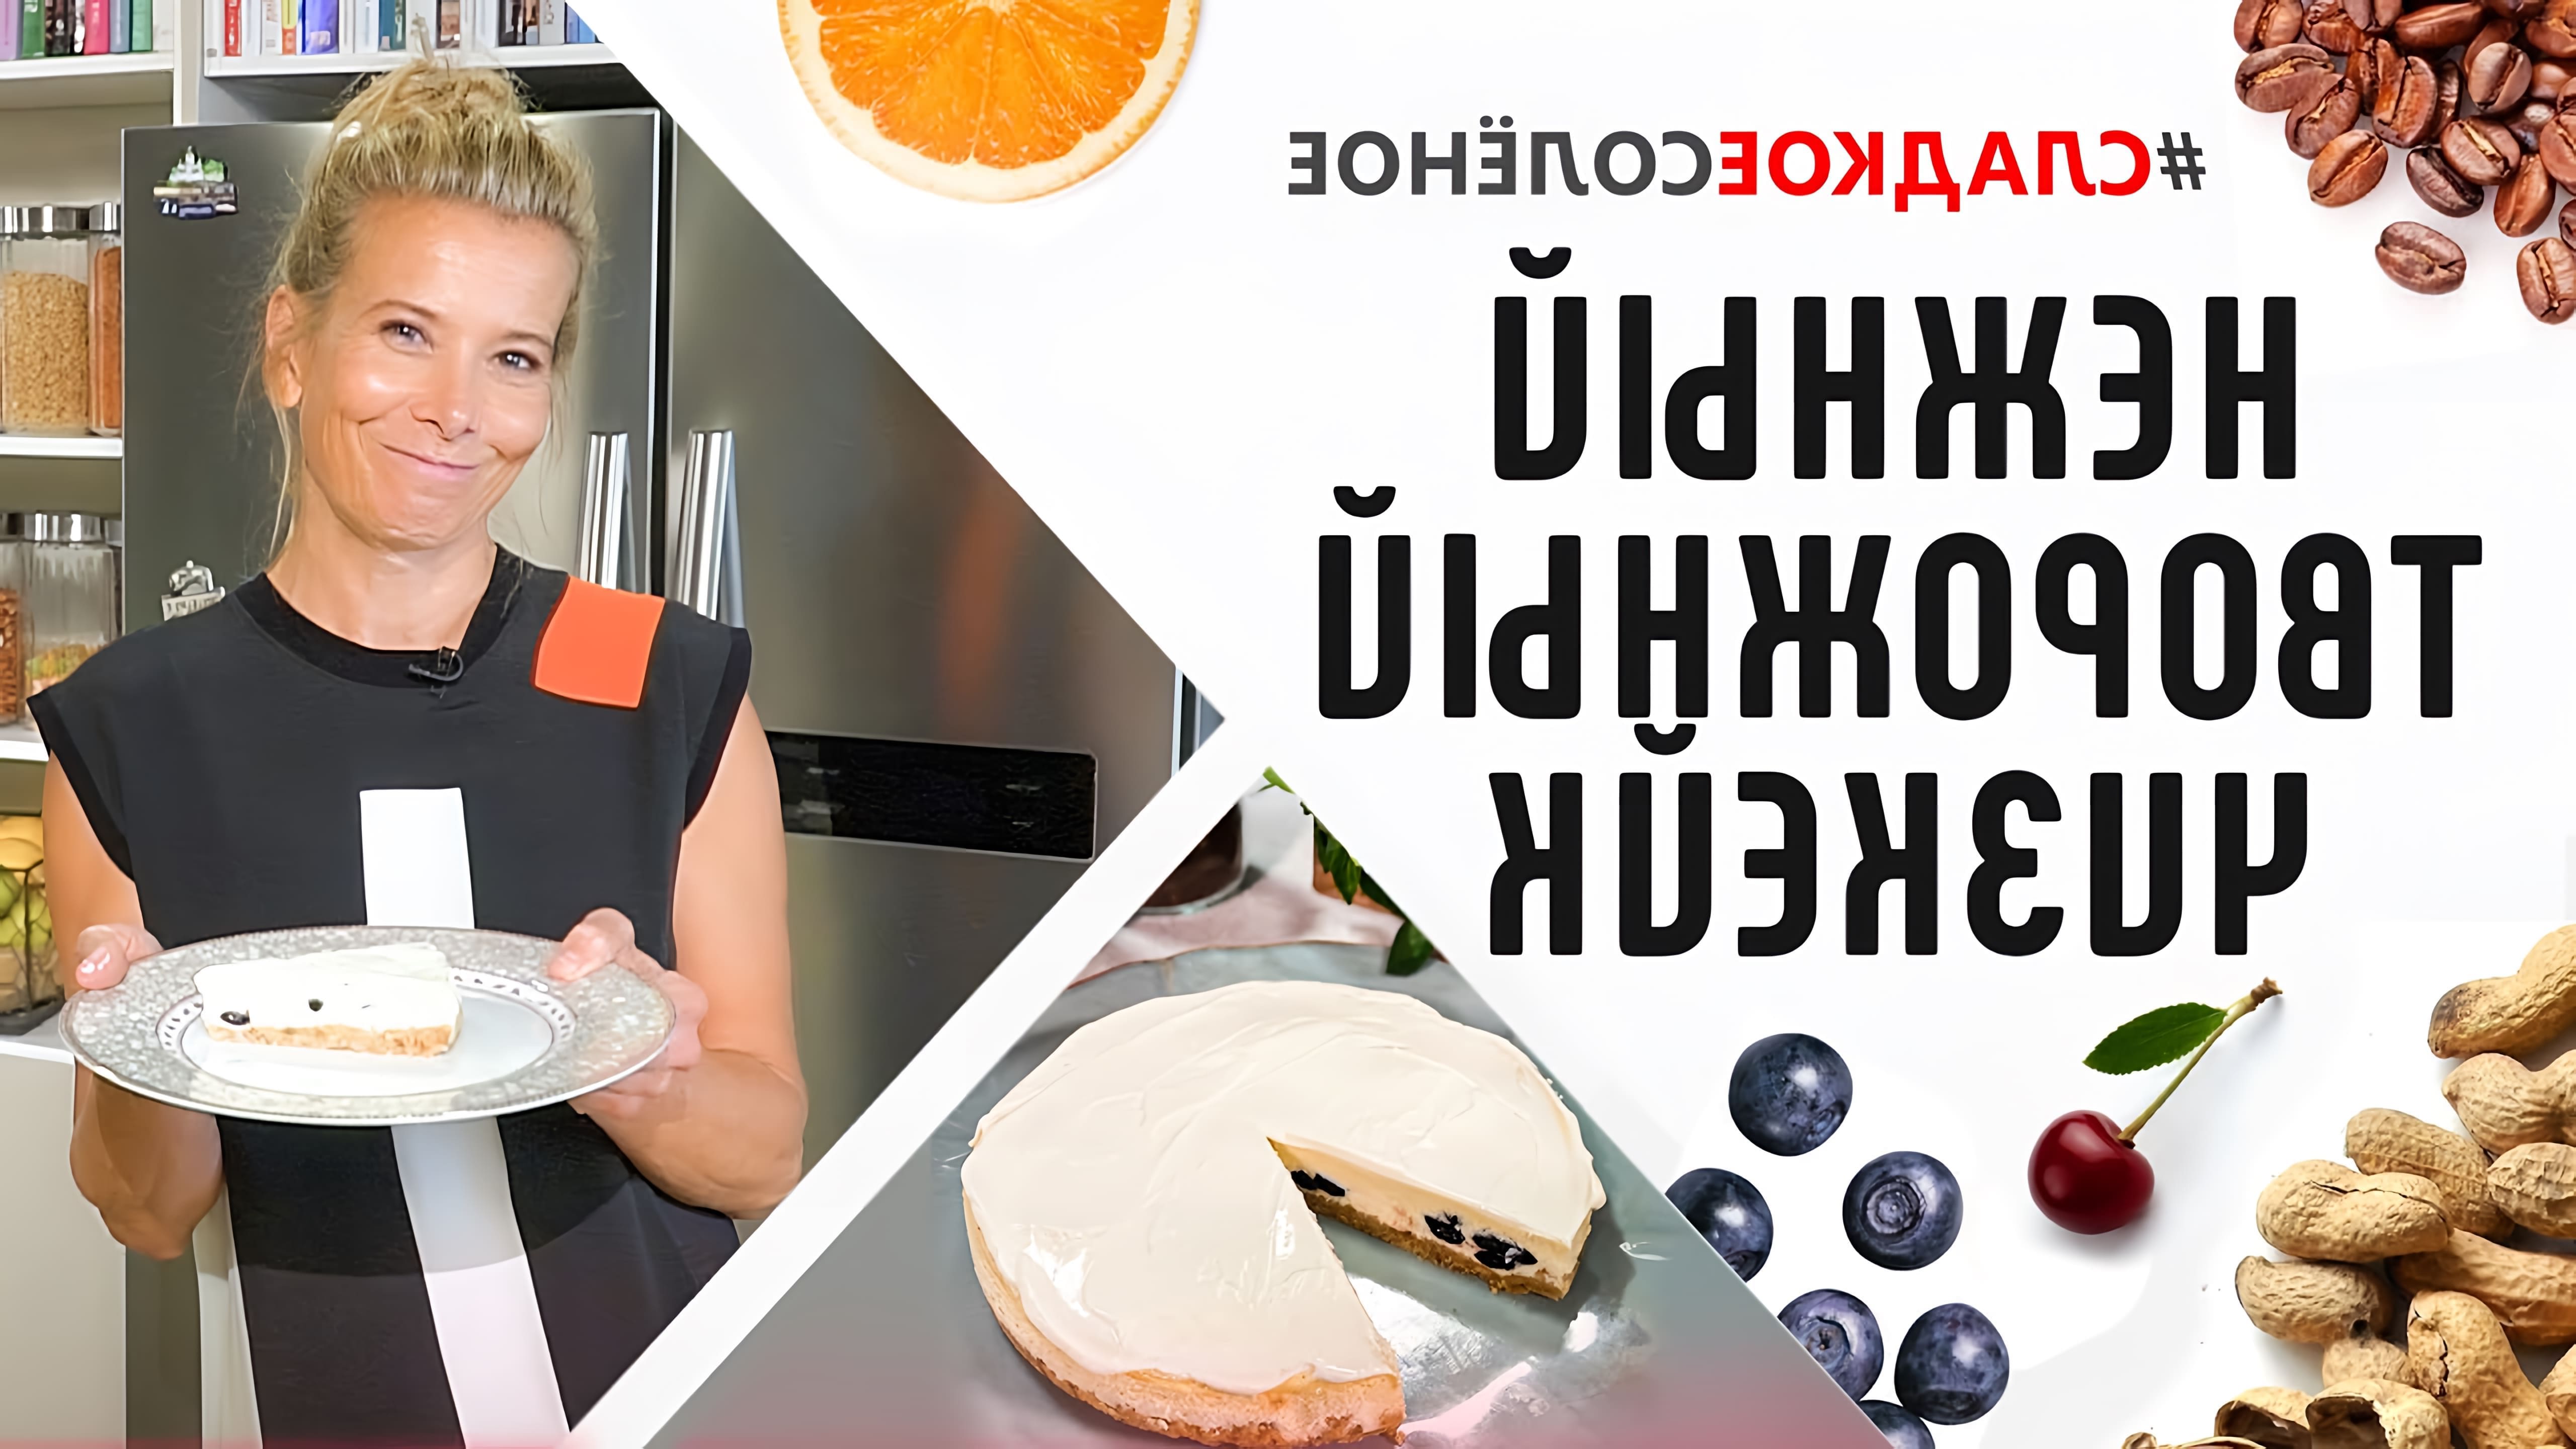 В этом видео Юлия Высоцкая показывает, как приготовить нежный творожный чизкейк